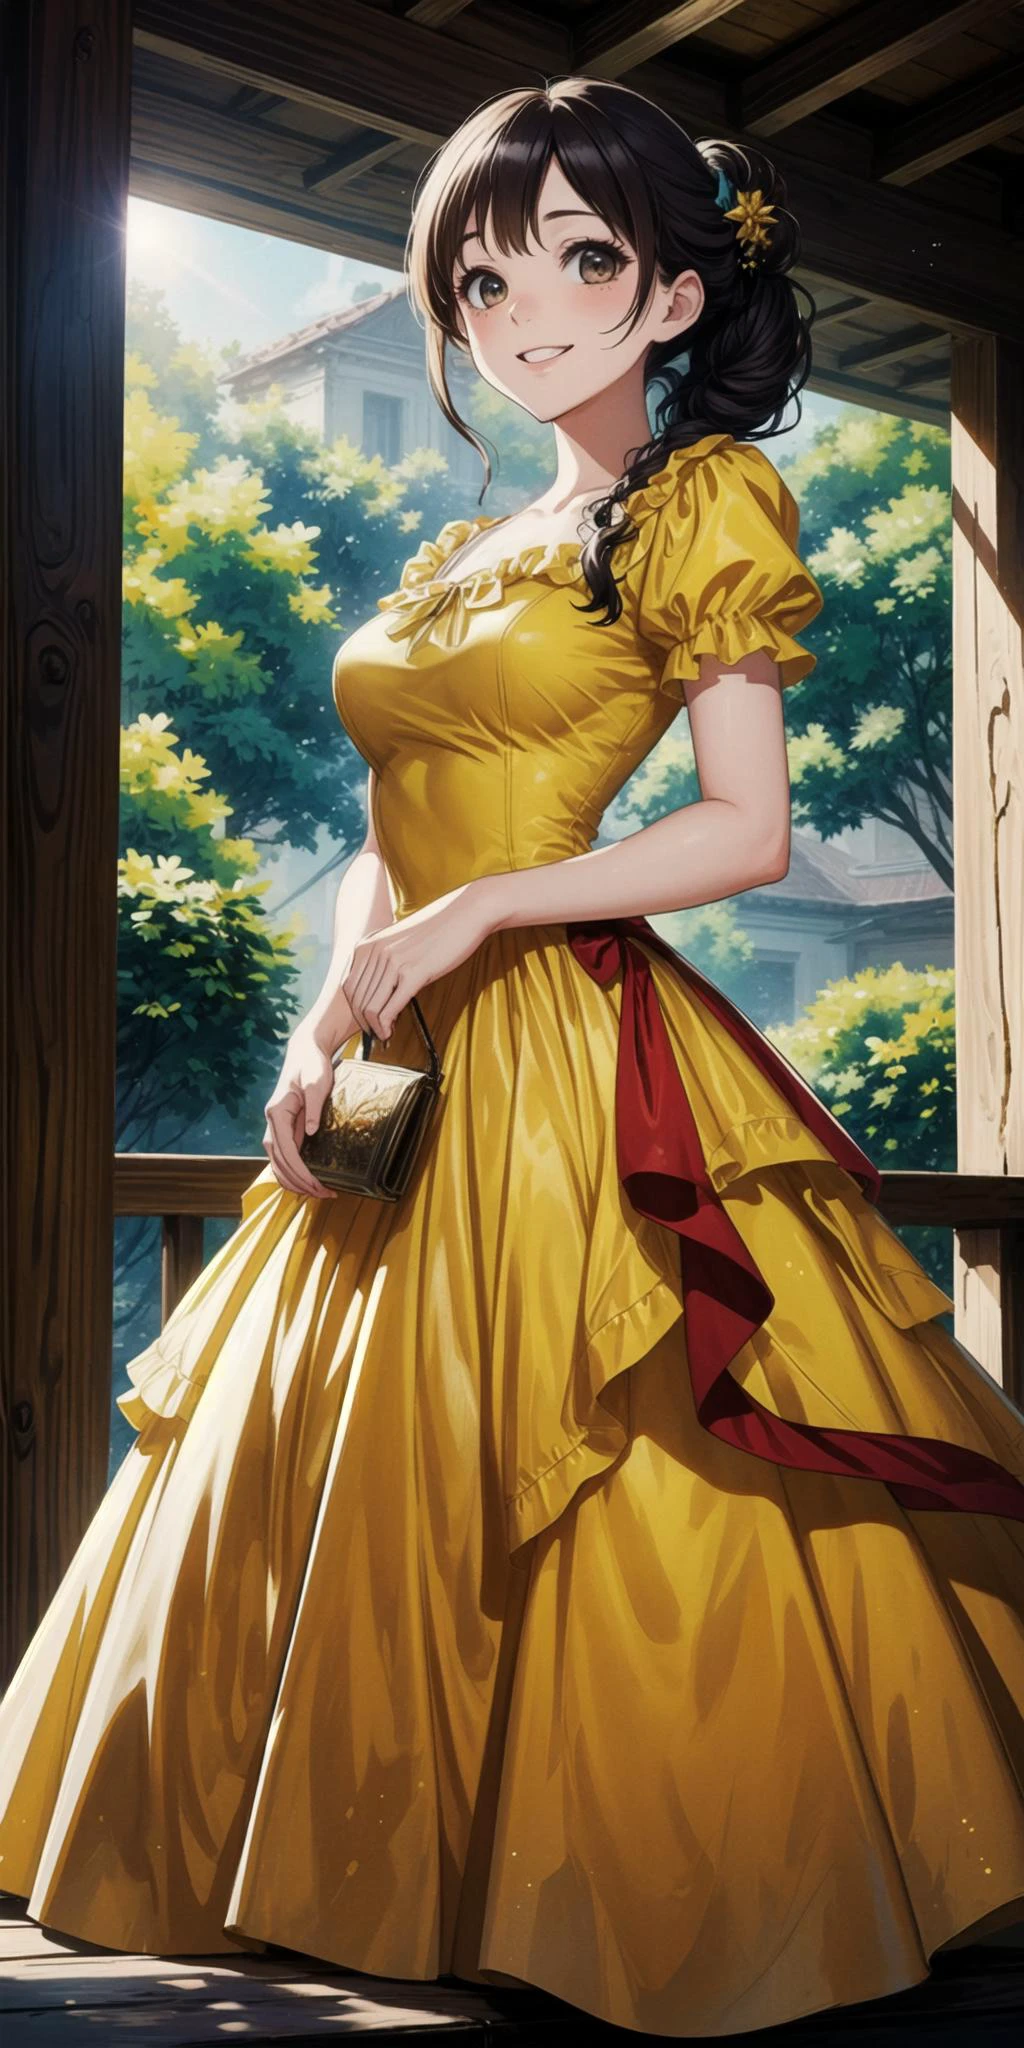 公主裙, 贵族中世纪黄色连衣裙, 克里诺林, 
女性的职业艺术, 
在 bg 上停车, 自然景观背景, 详细背景, 
